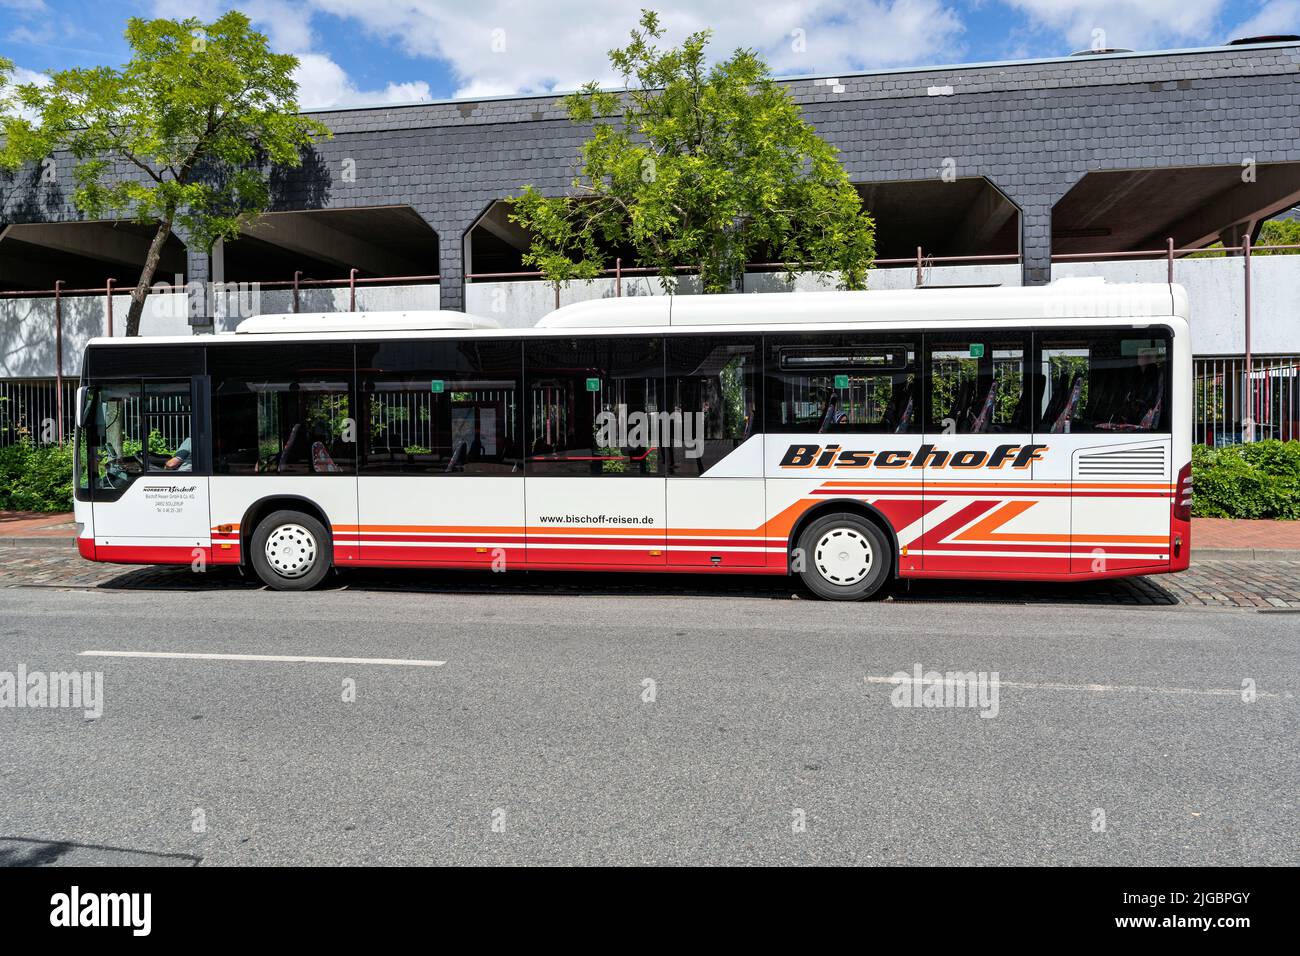 Bischoff Reisen Bus in Schleswig, Deutschland Stockfotografie - Alamy